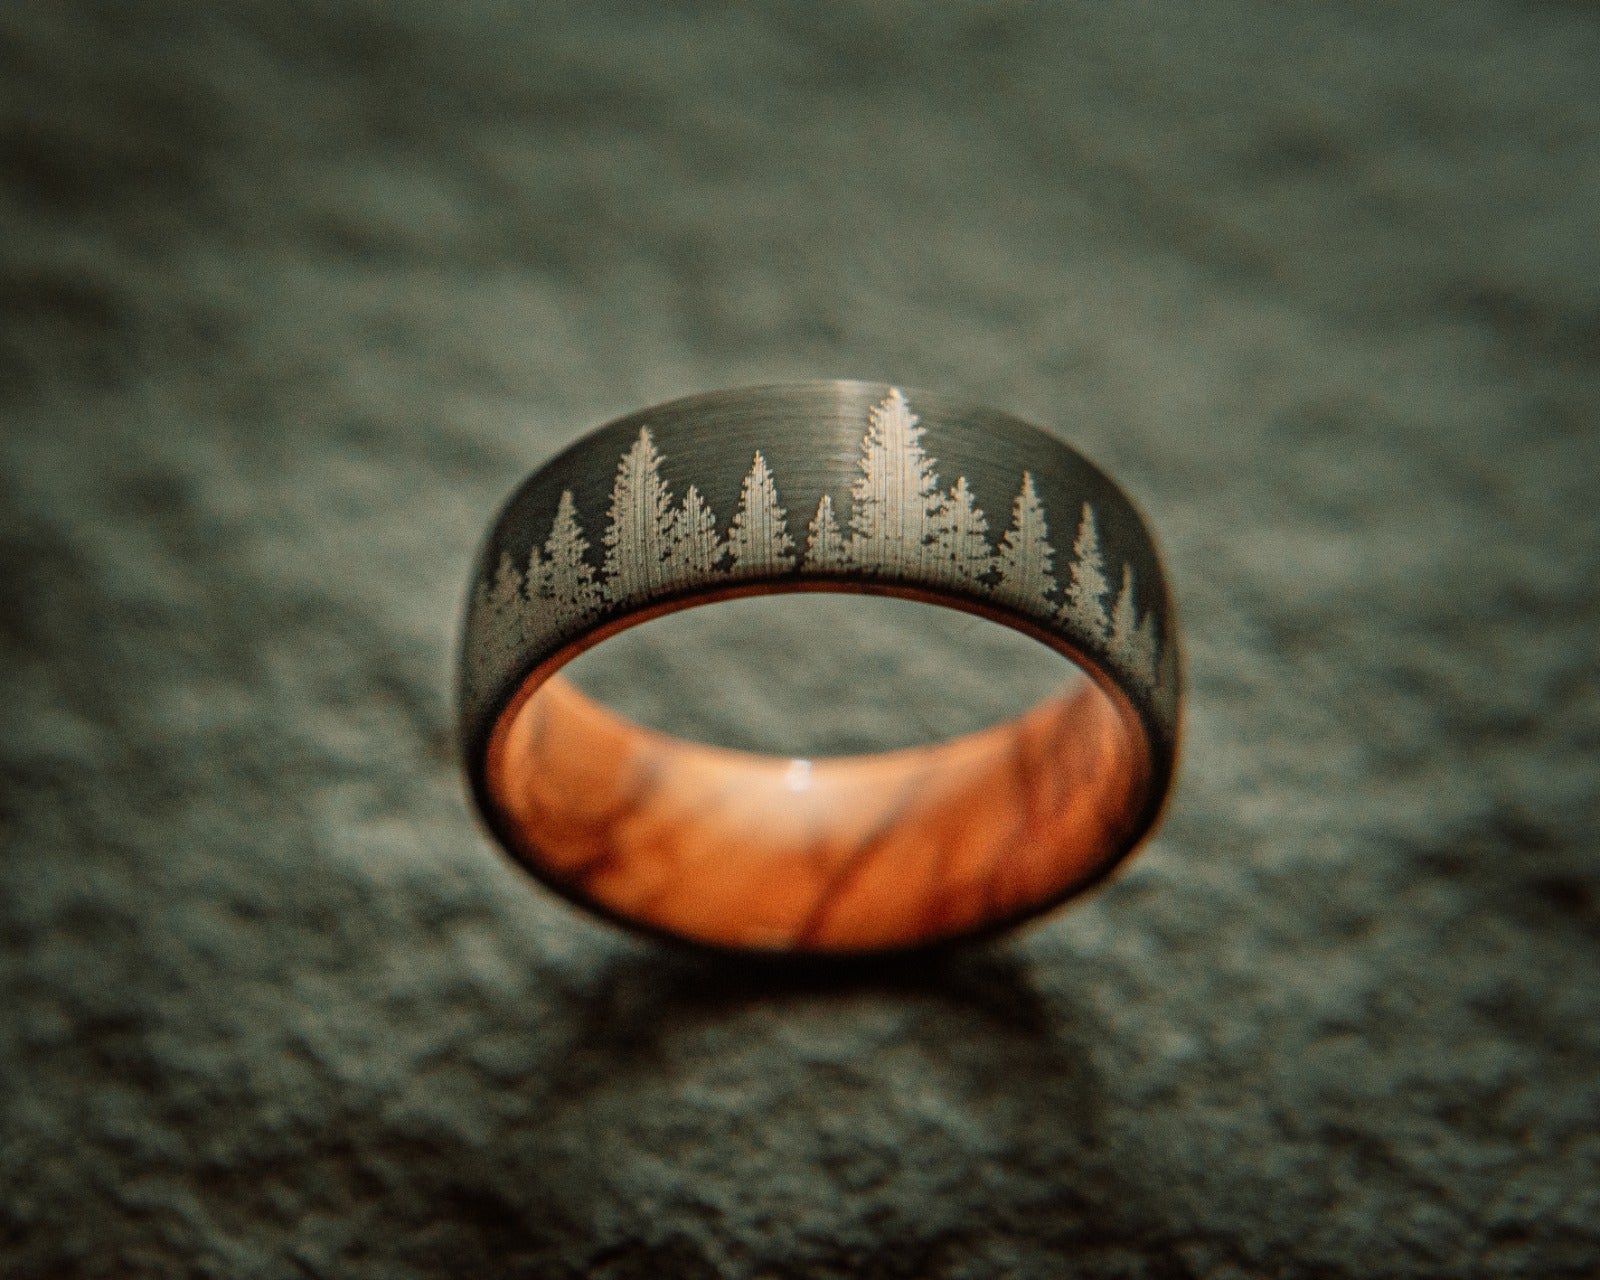 The “Adventurer” Ring